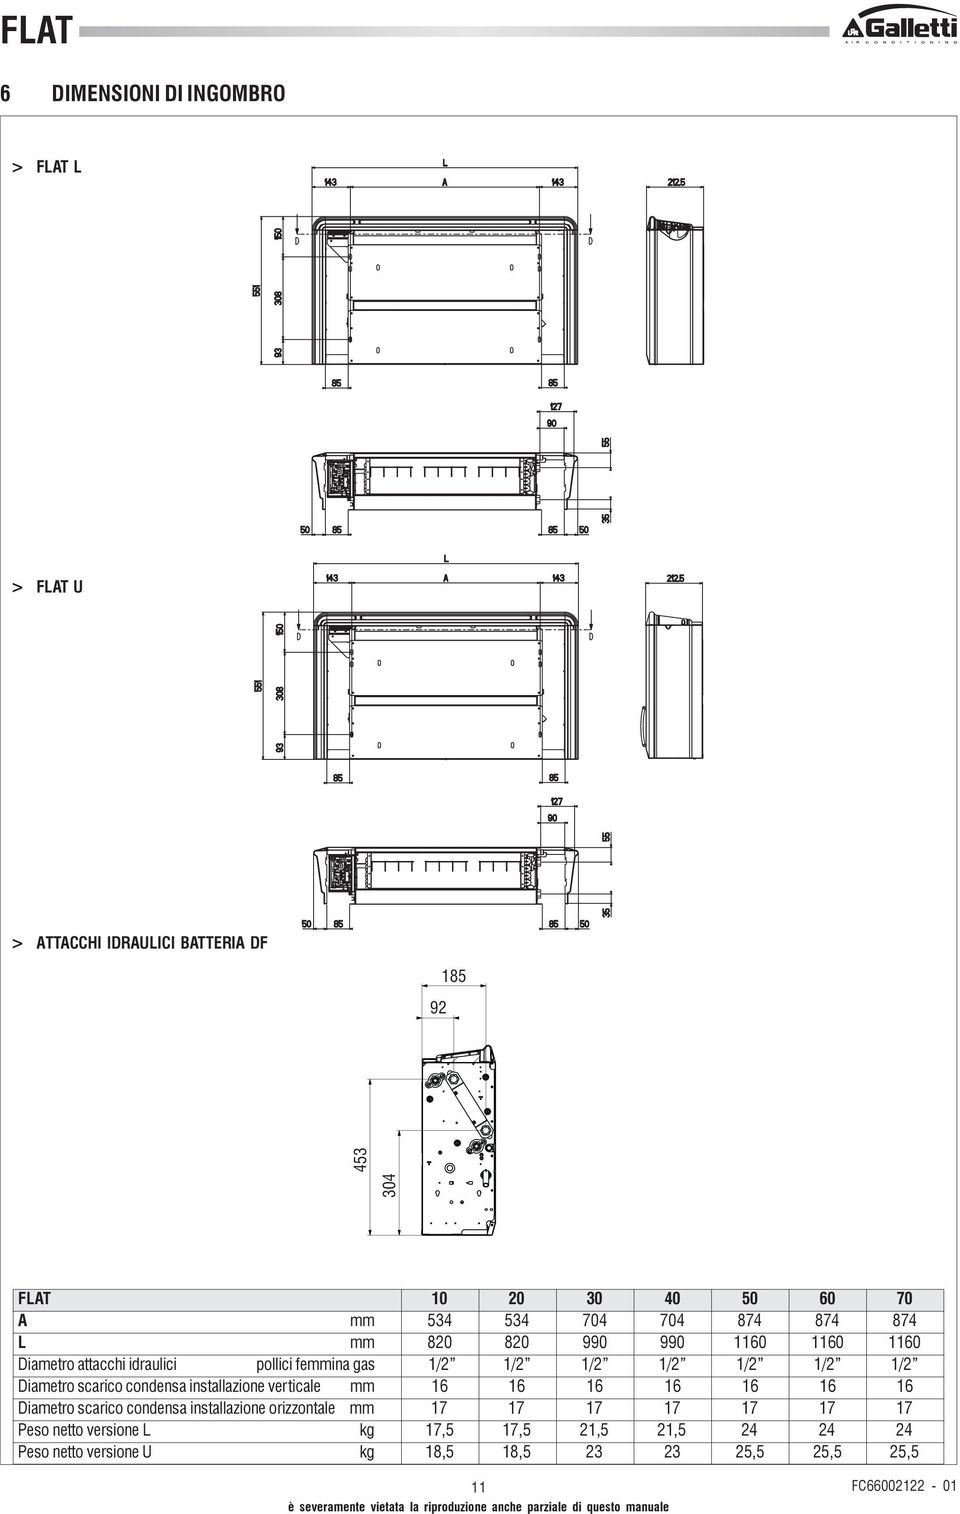 1/2 1/2 1/2 1/2 Diametro scarico condensa installazione verticale mm 16161616161616 Diametro scarico condensa installazione